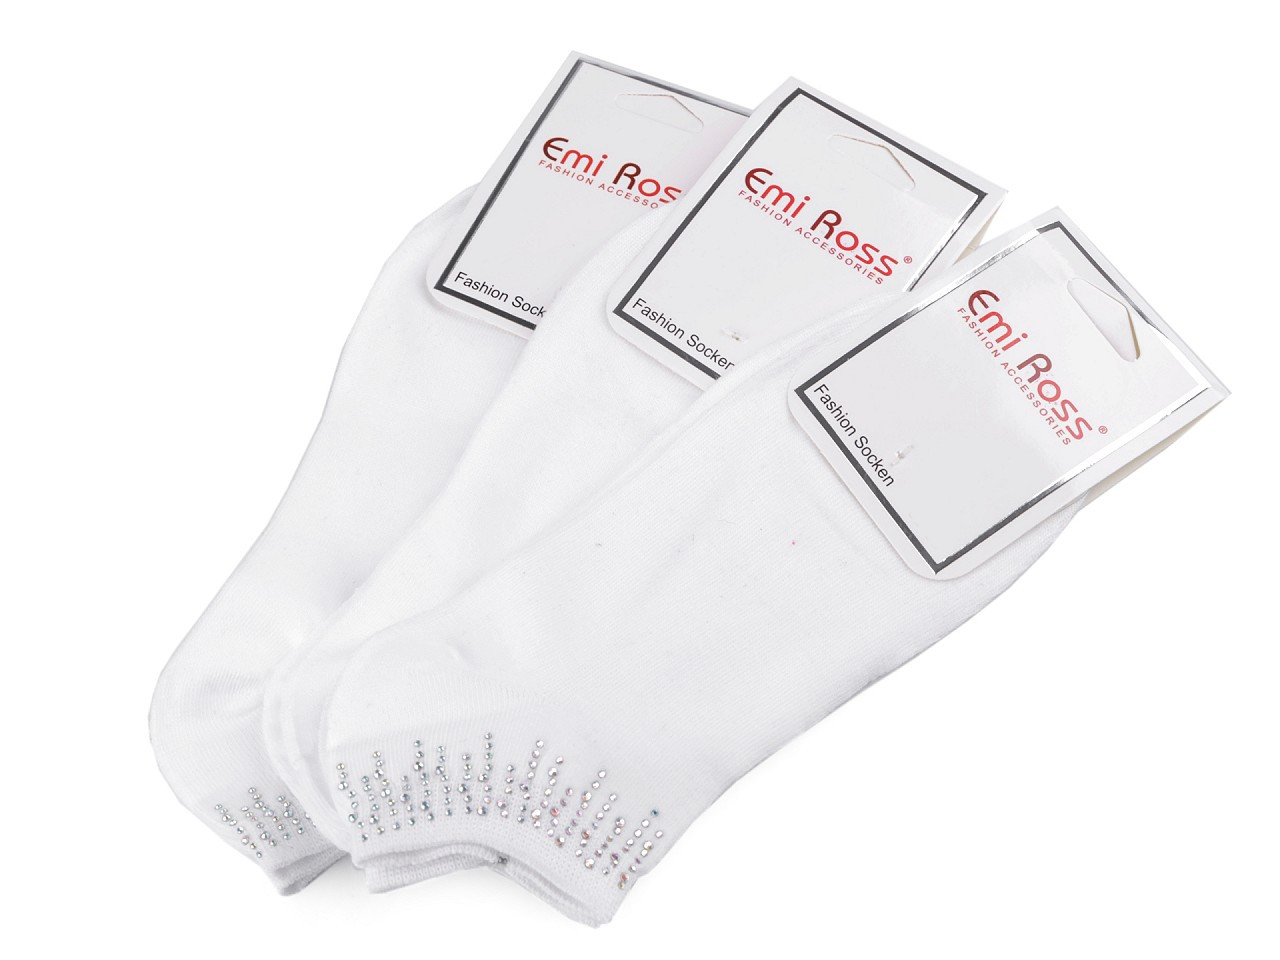 Dámské bavlněné ponožky kotníkové s kamínky Emi Ross, barva 28 (vel. 39-42) bílá